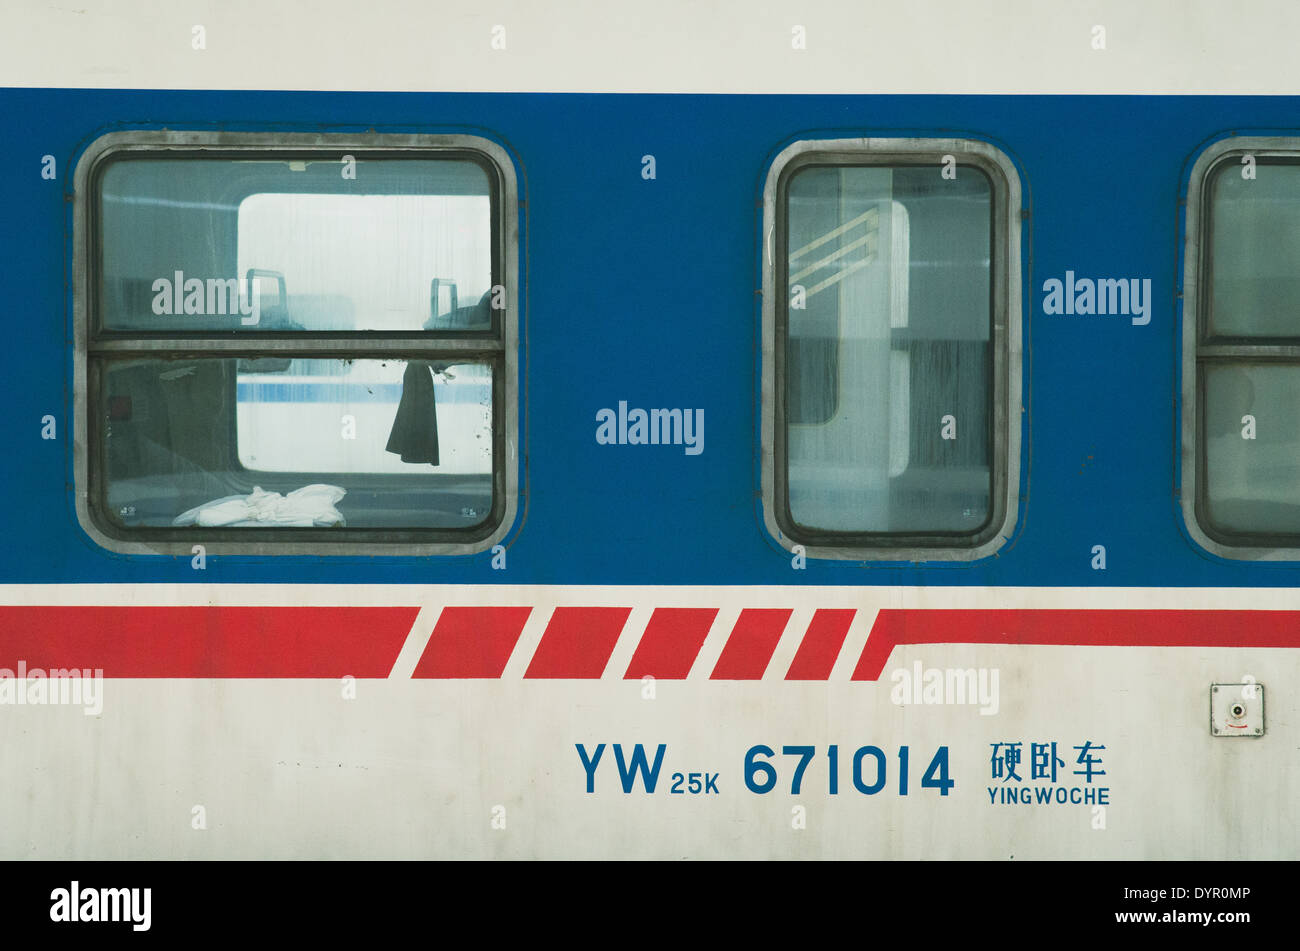 La estación de tren de Wuhan, aspecto exterior del tren harbin a Wuhan. Foto de stock